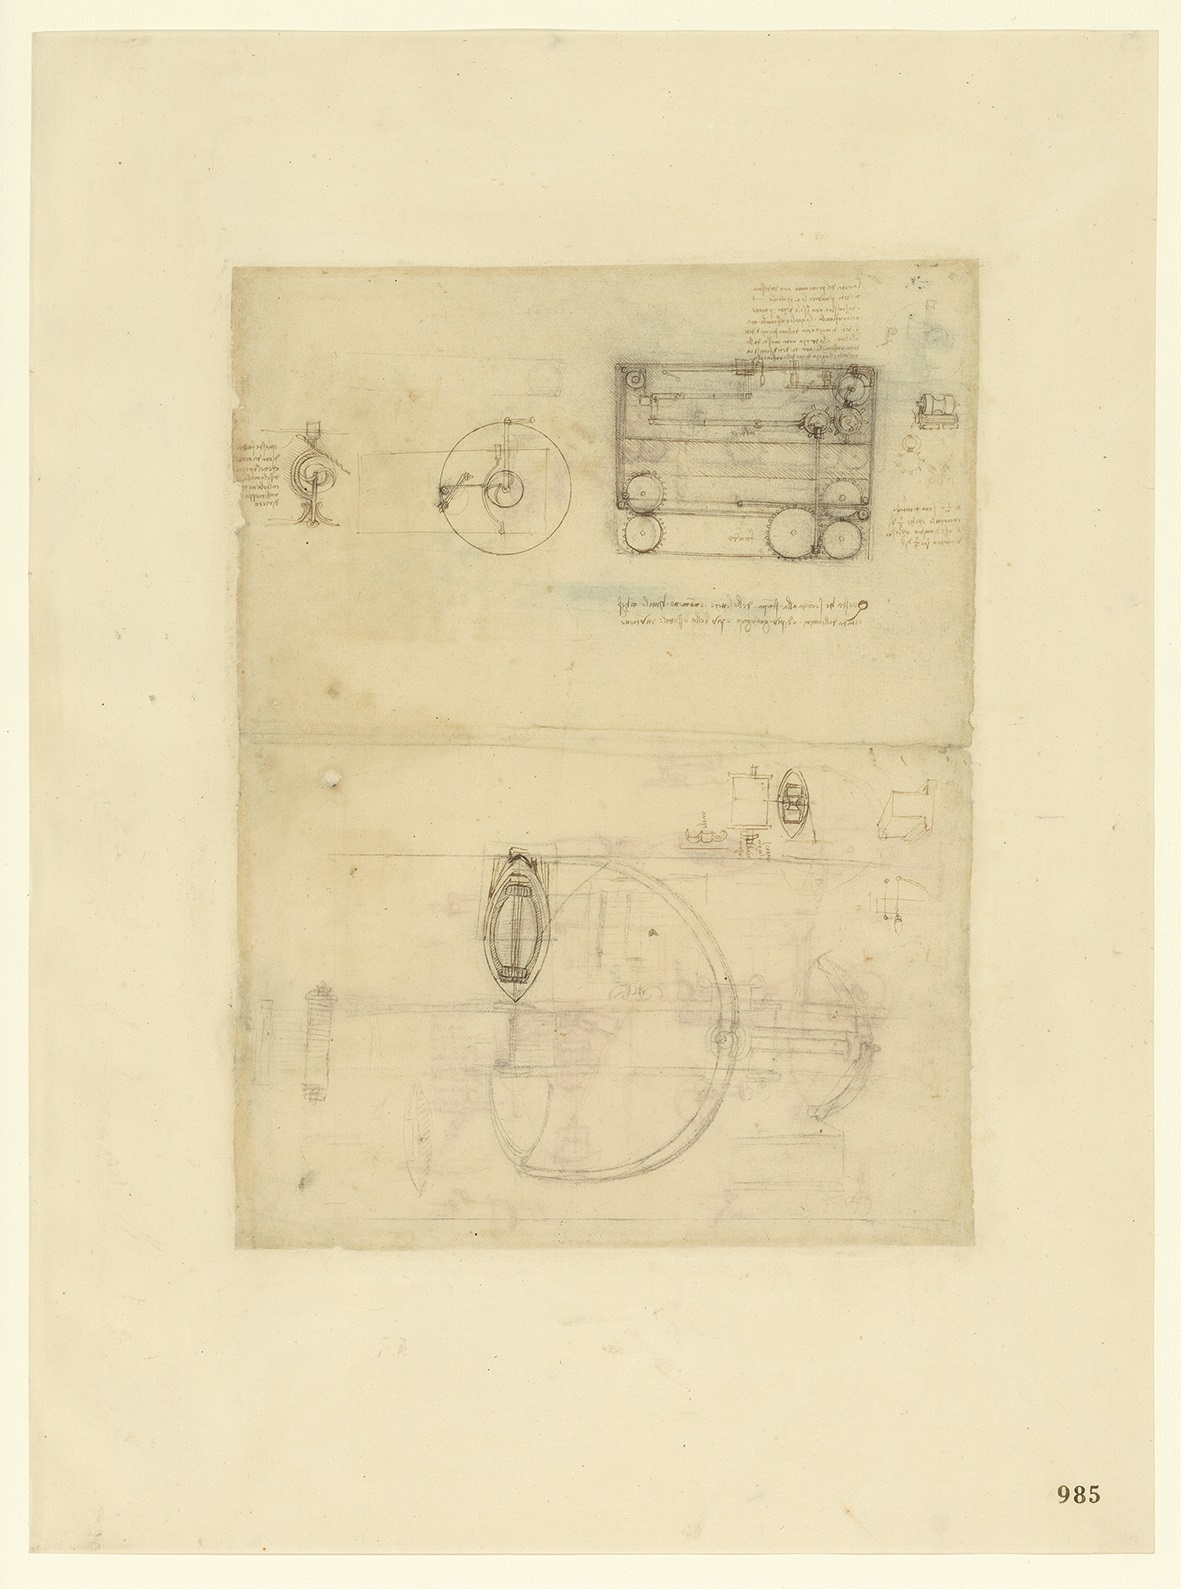 Leonardo da Vinci (1452-1519), Codice Atlantico (Codex Atlanticus), foglio 985 recto. Sistemi d'aggancio e sgancio automatico; disegno di non facile identificazione (probabilmente una barca); in alto, macchine per la tessitura.